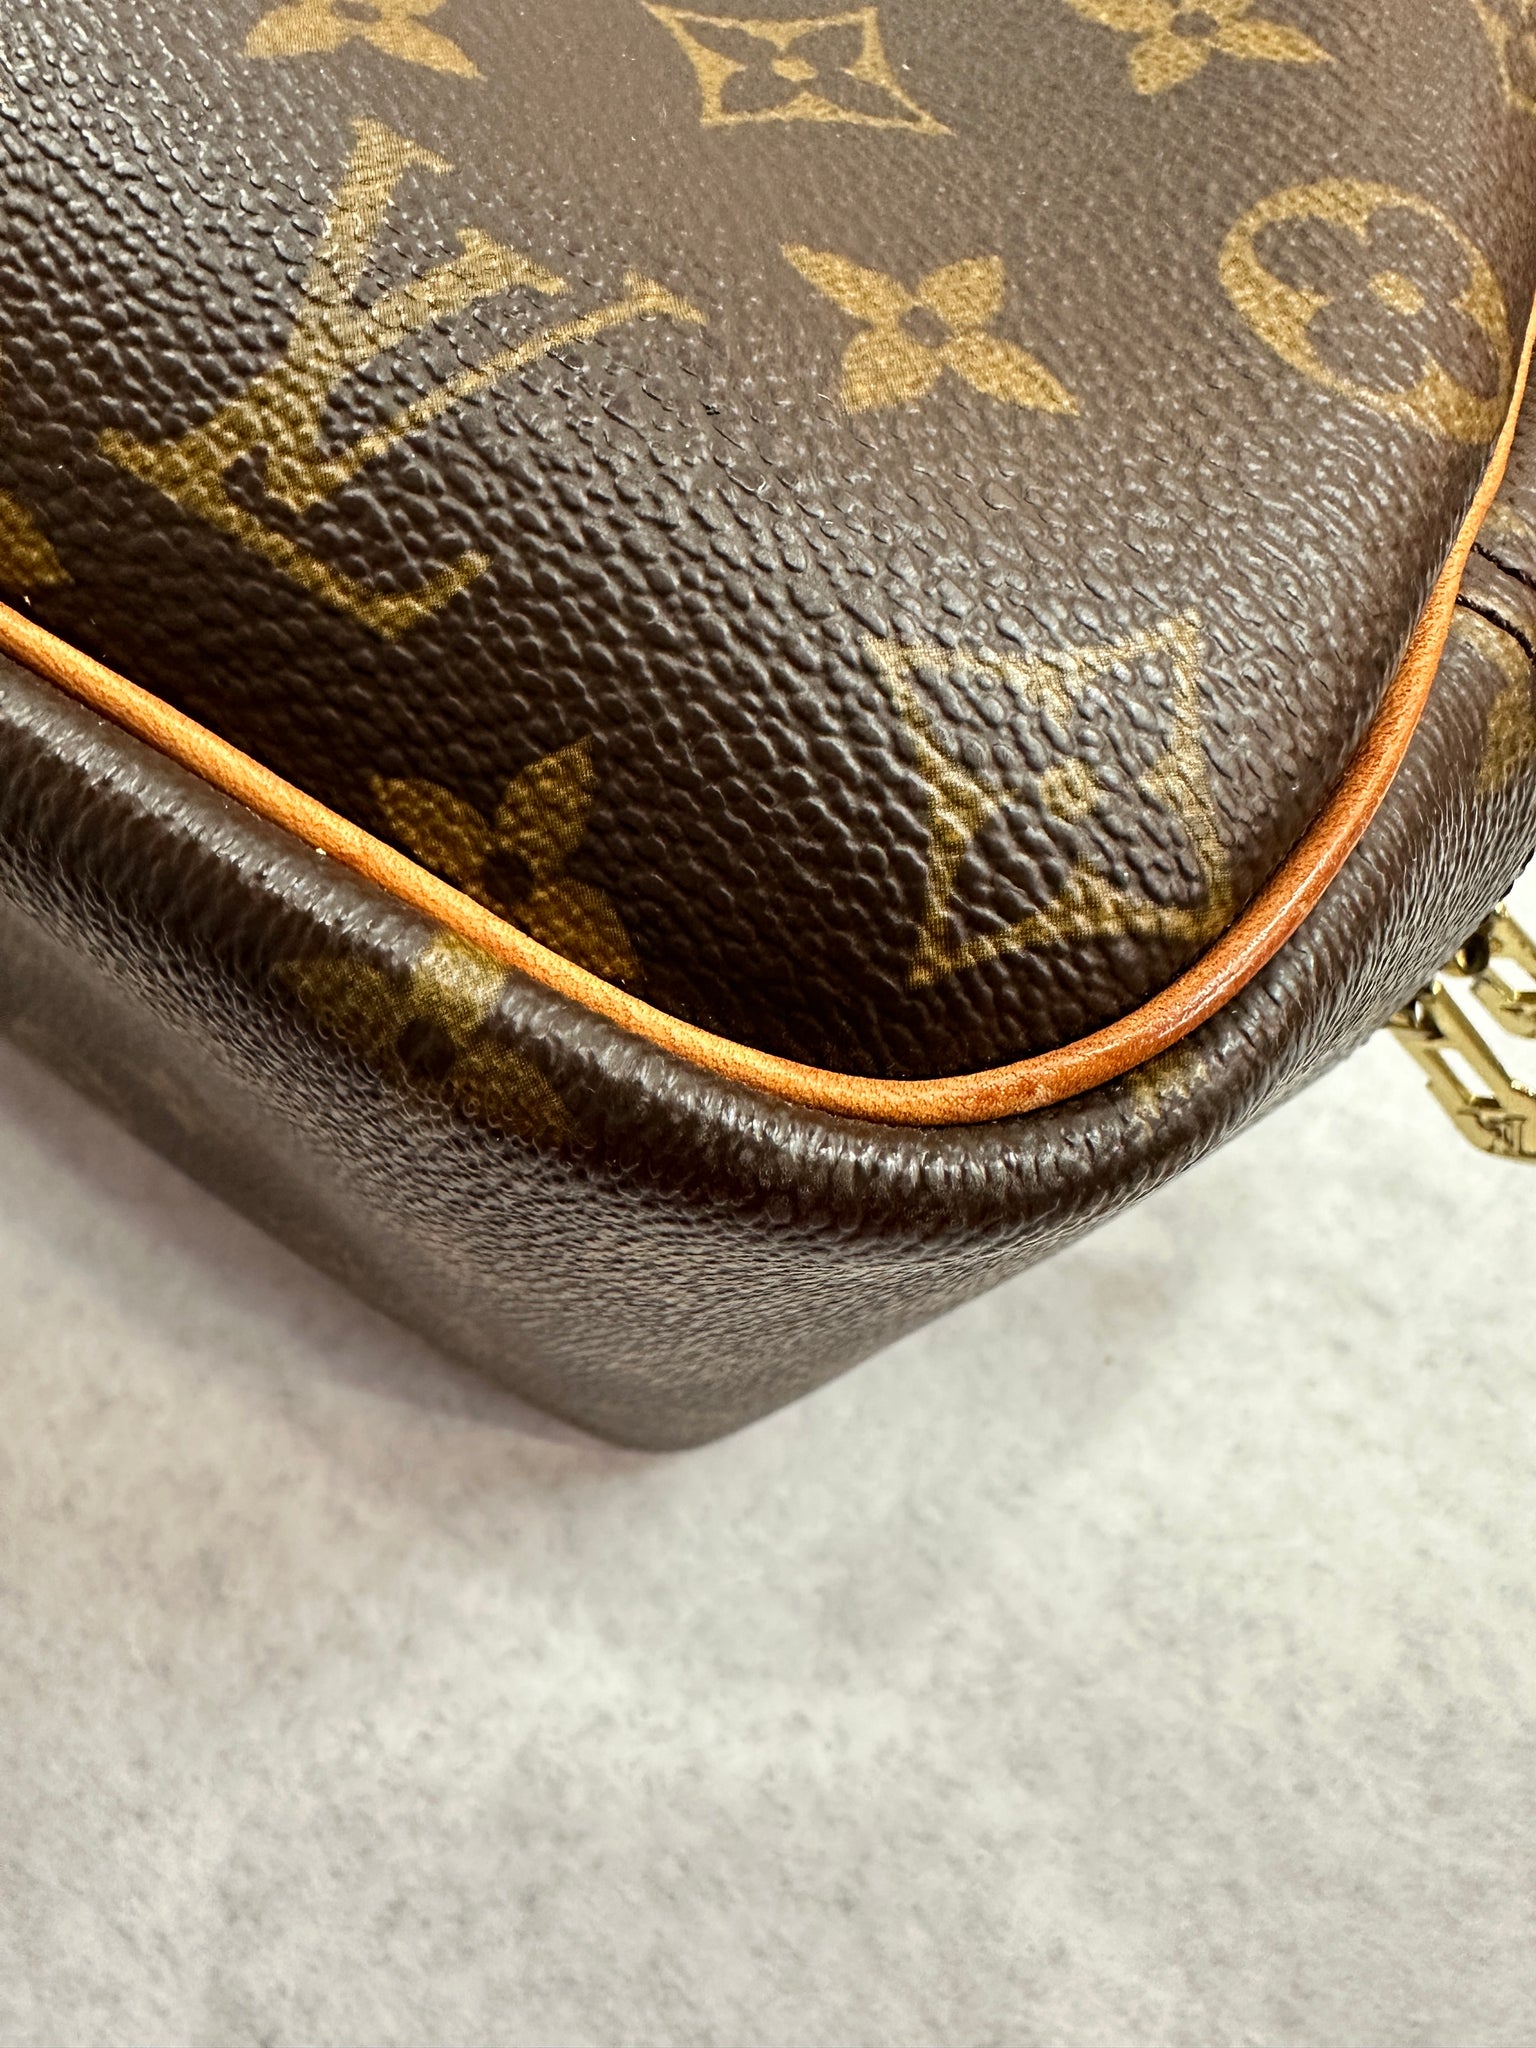 Vintage Authentic Louis Vuitton Deauville monogram handbag for